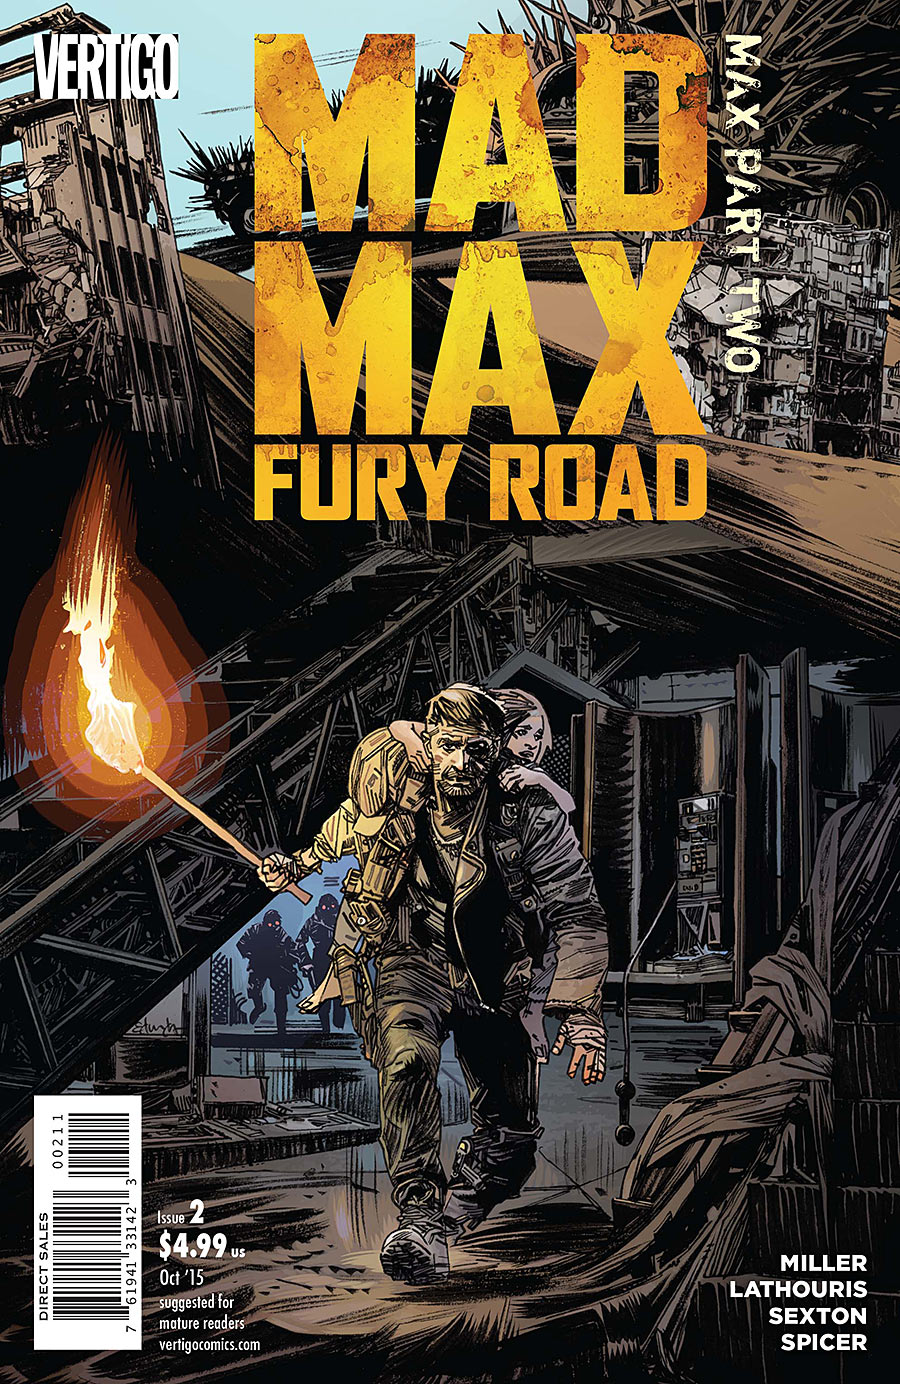 mad max fury road wikia